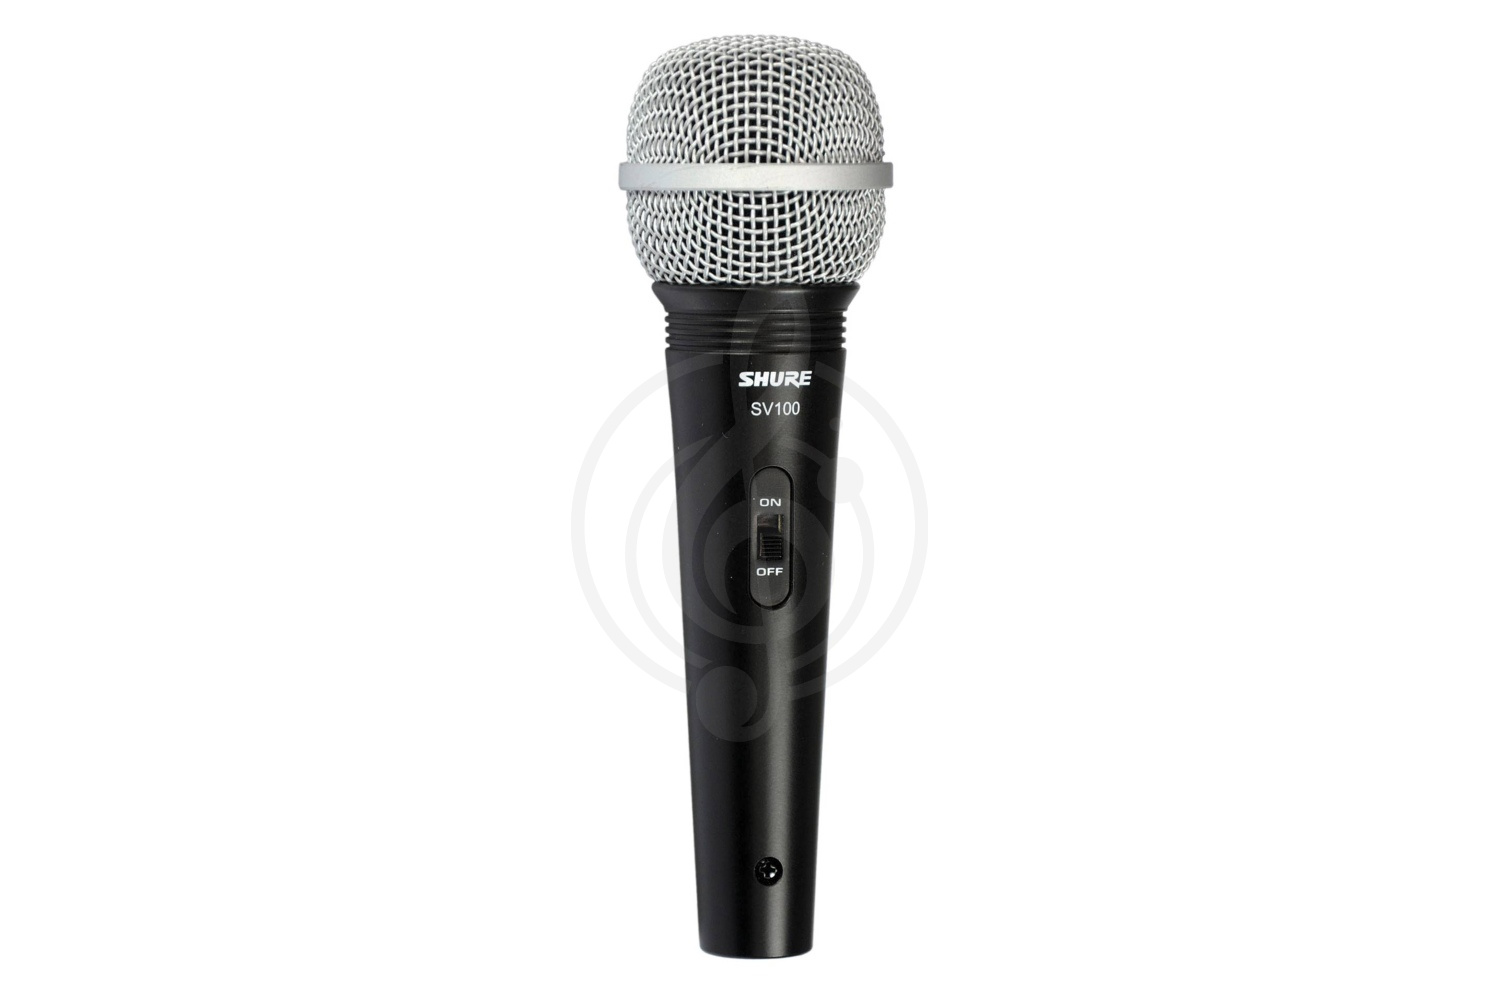 Динамический вокальный микрофон Динамические вокальные микрофоны Shure SHURE SV100-A - микрофон динамический, вокально-речевой SV100-A - фото 1